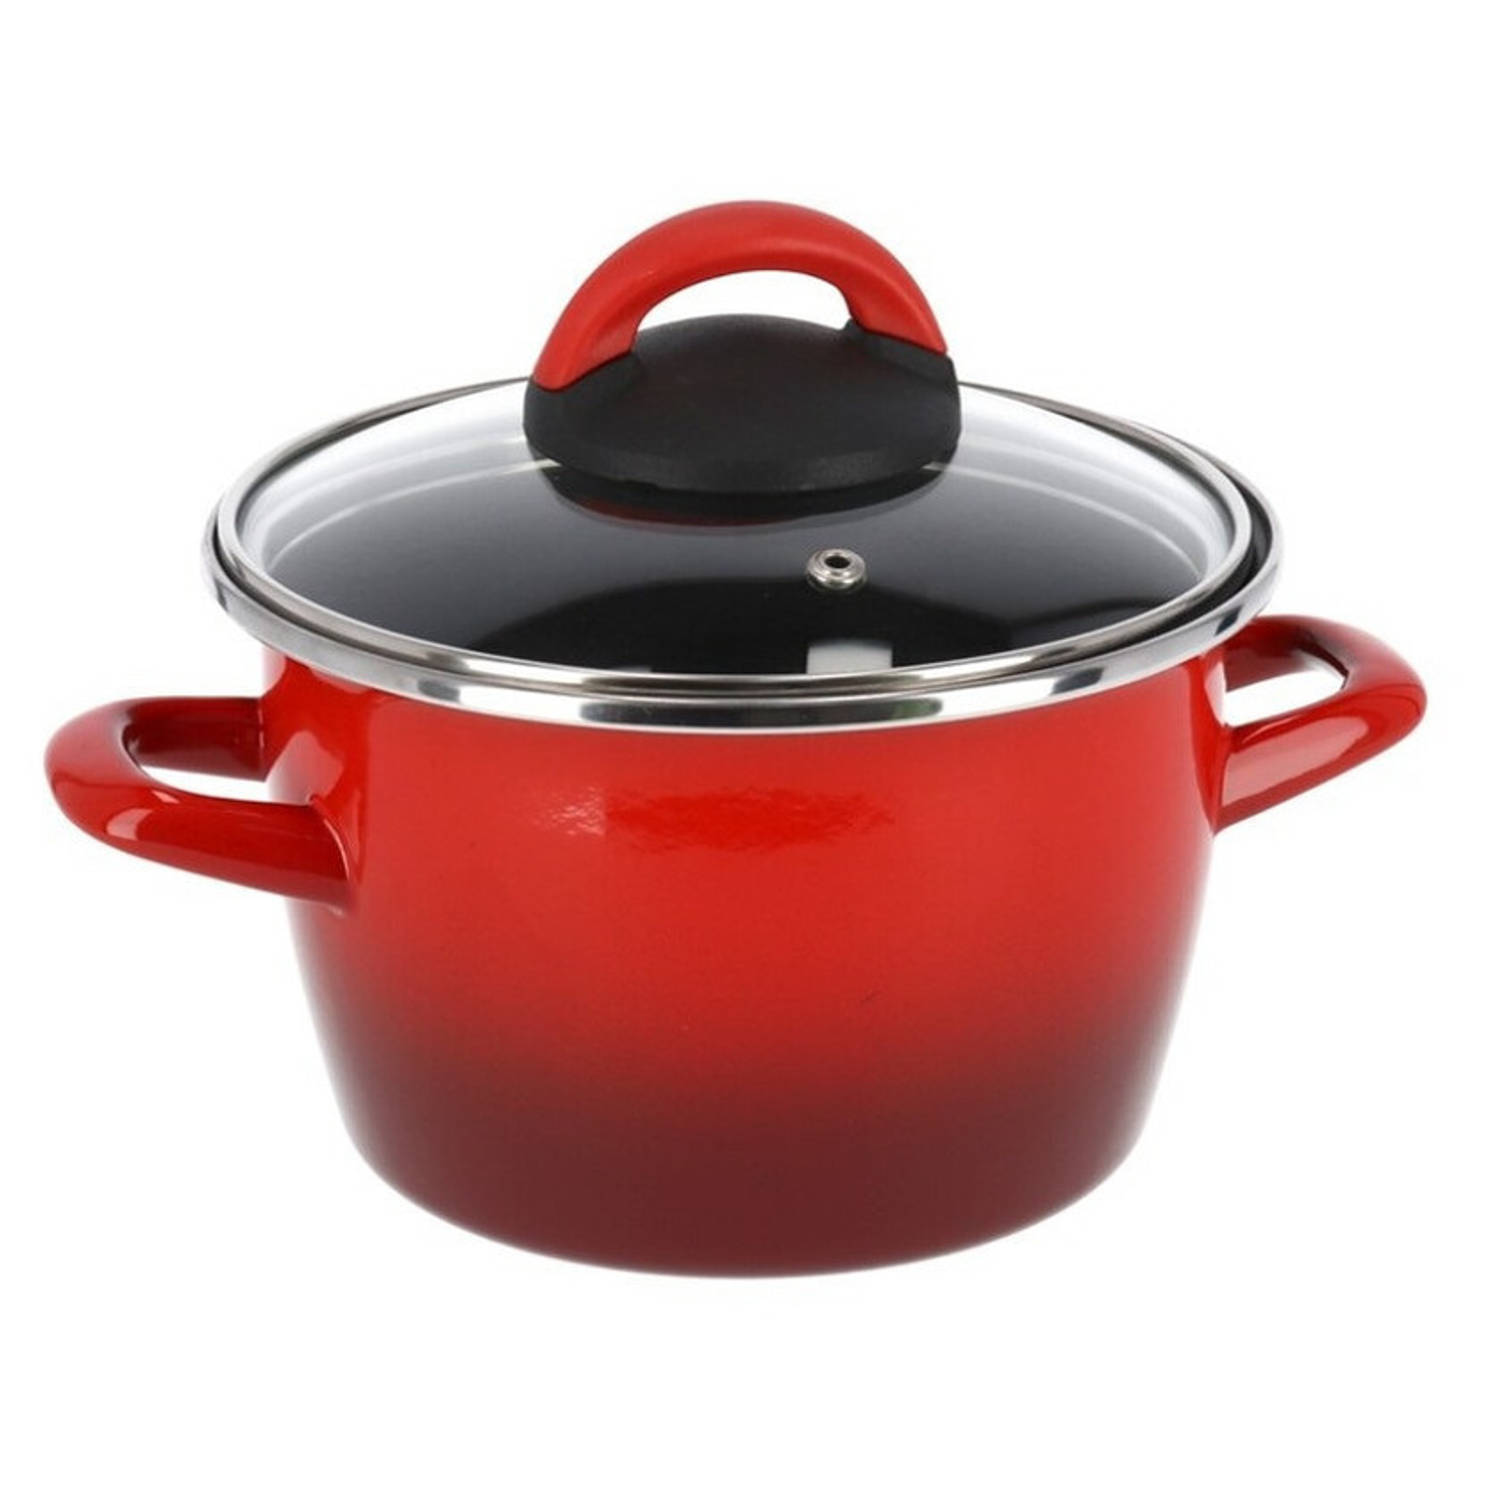 Beroep omdraaien deken Rvs rode kookpan/pan met glazen deksel 20 cm 6 liter - Kookpannen | Blokker